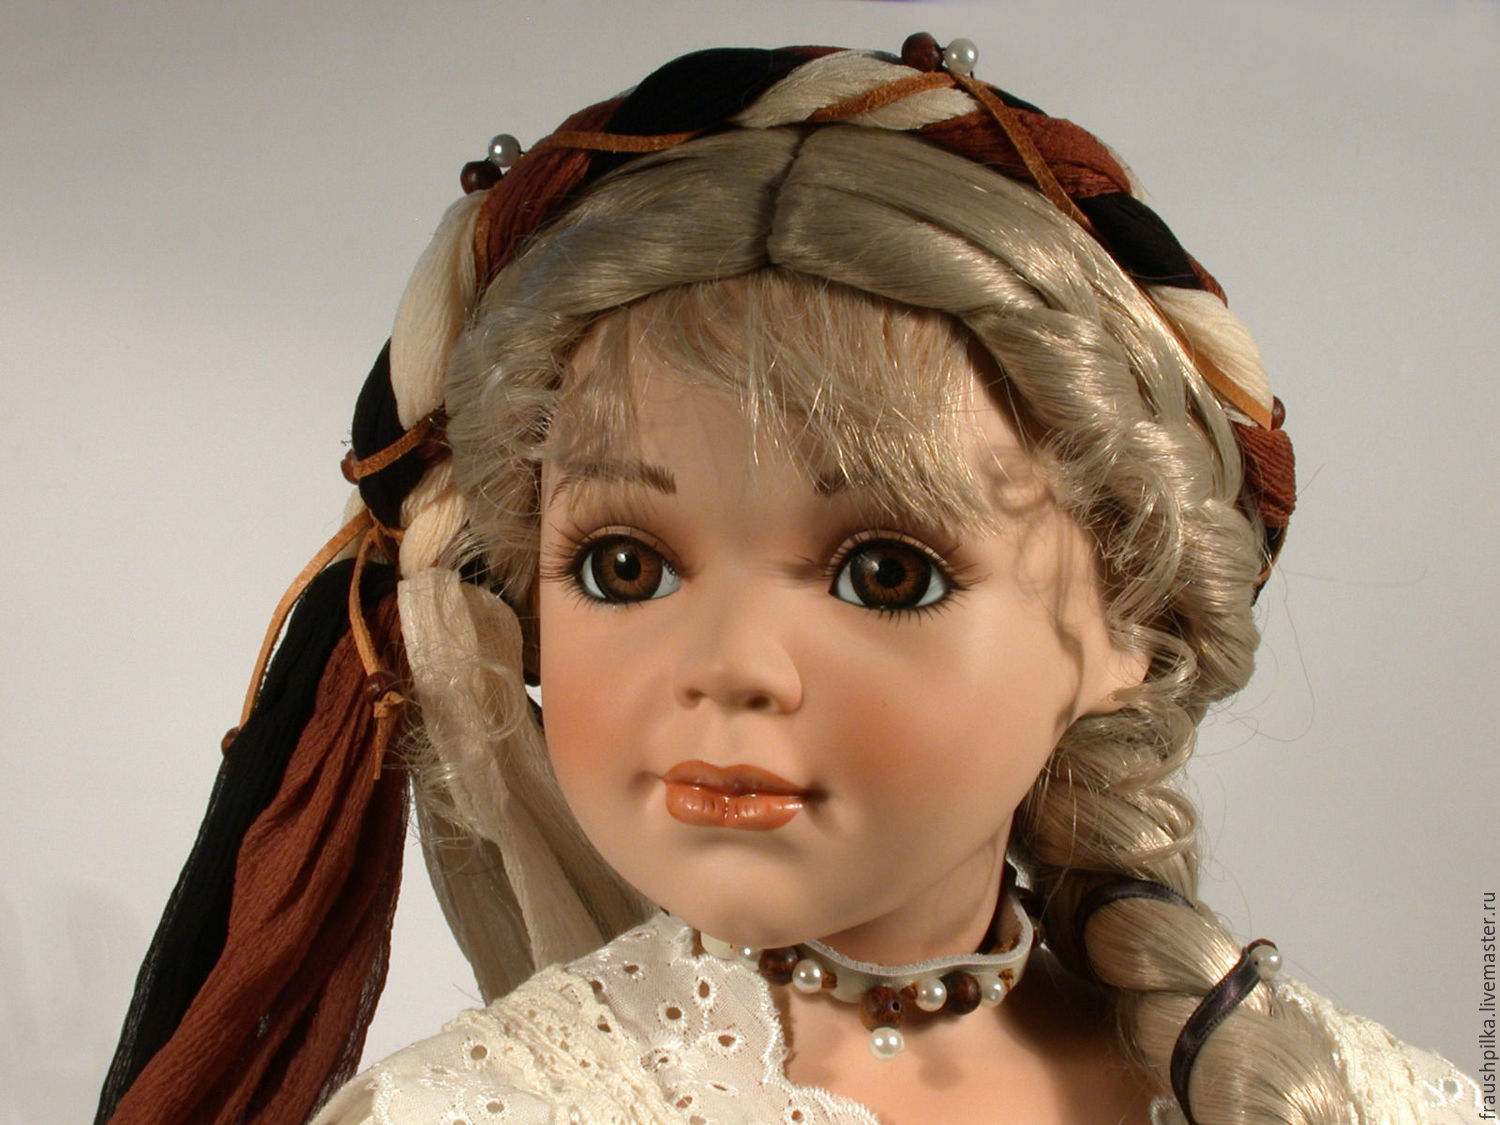 Купить коллекцию кукол. Кукла фарфоровая. Немецкие фарфоровые куклы. Красивые фарфоровые куклы. Фарфоровые куклы коллекционные.